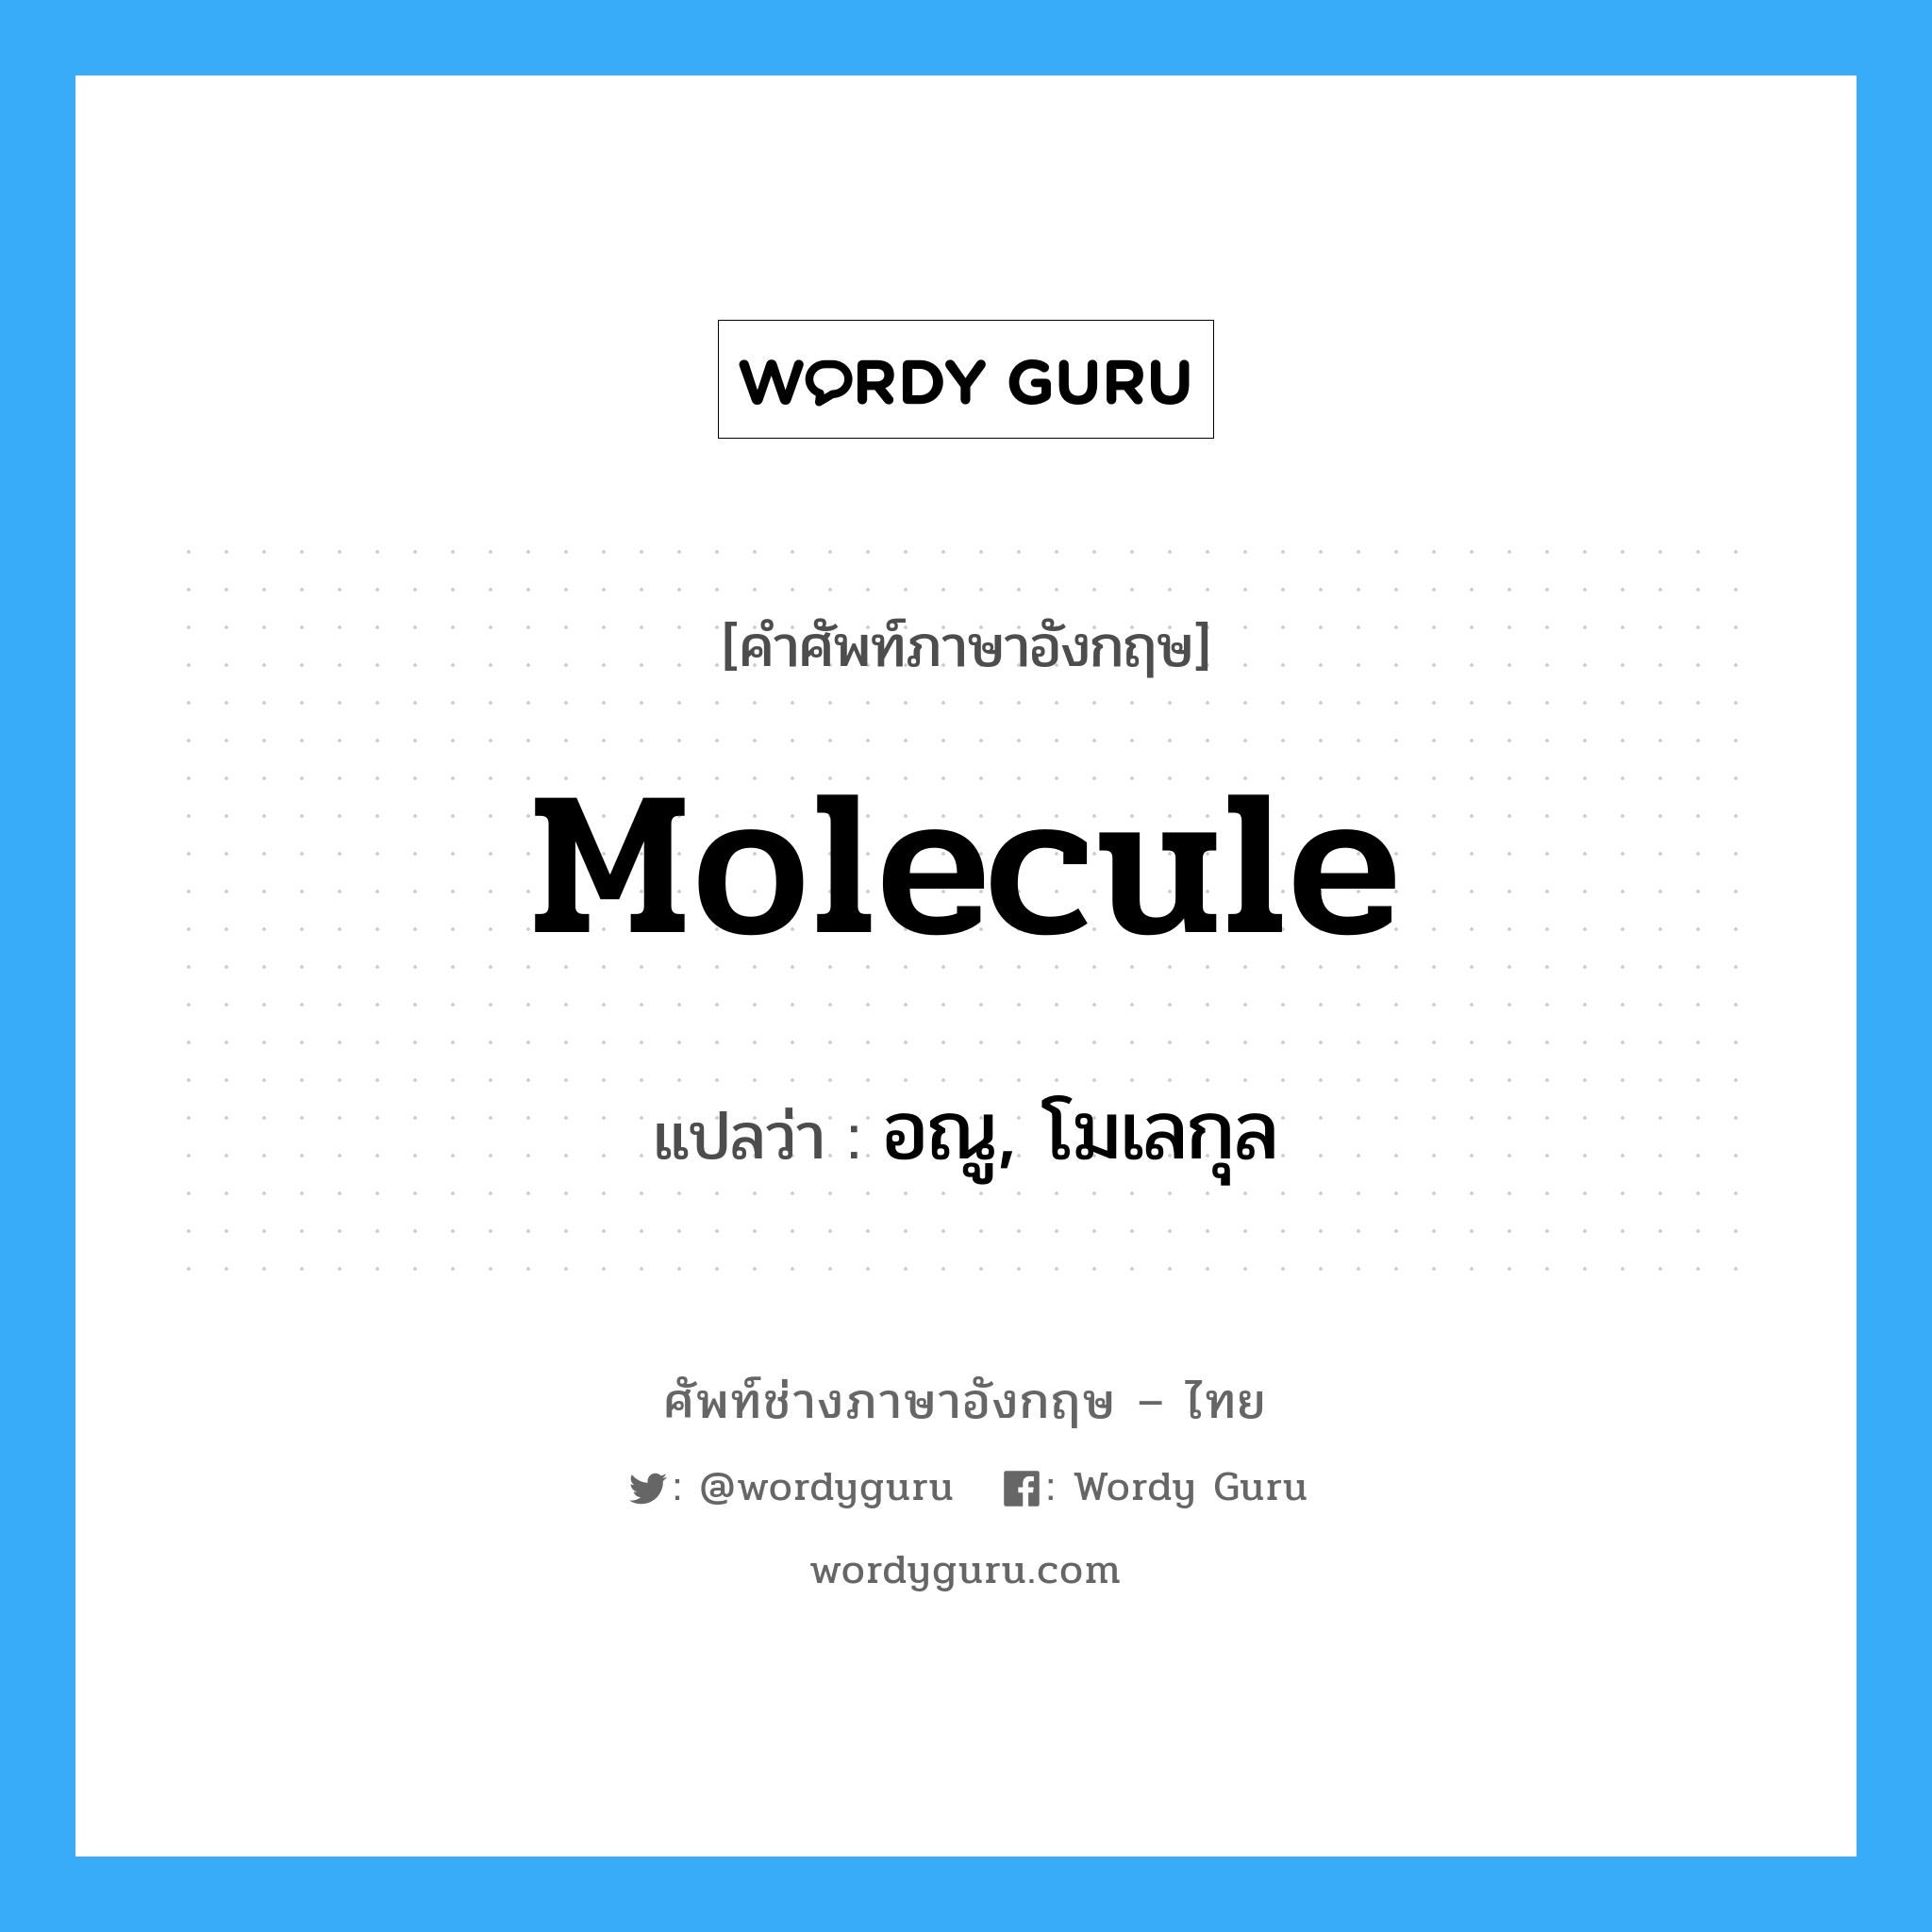 อณู, โมเลกุล ภาษาอังกฤษ?, คำศัพท์ช่างภาษาอังกฤษ - ไทย อณู, โมเลกุล คำศัพท์ภาษาอังกฤษ อณู, โมเลกุล แปลว่า molecule